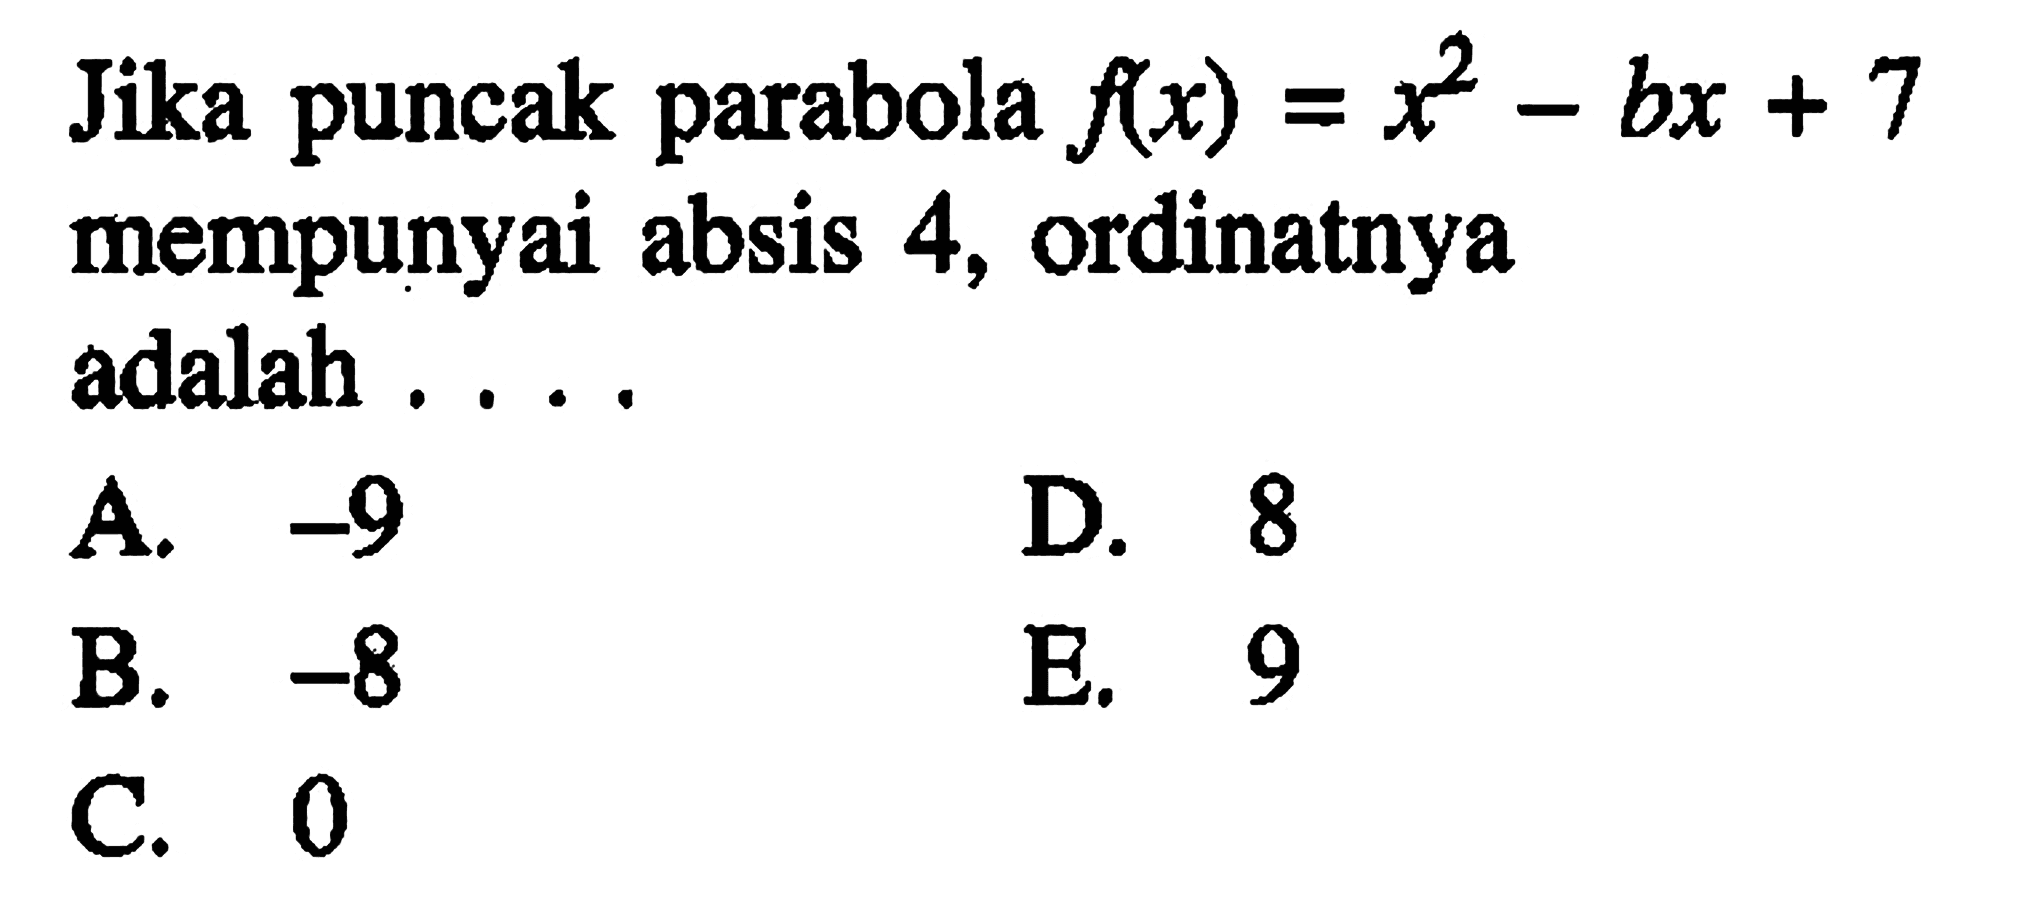 Jika puncak parabola f(x)=x^2-bx+7 mempunyai absis 4, ordinatnya adalah 